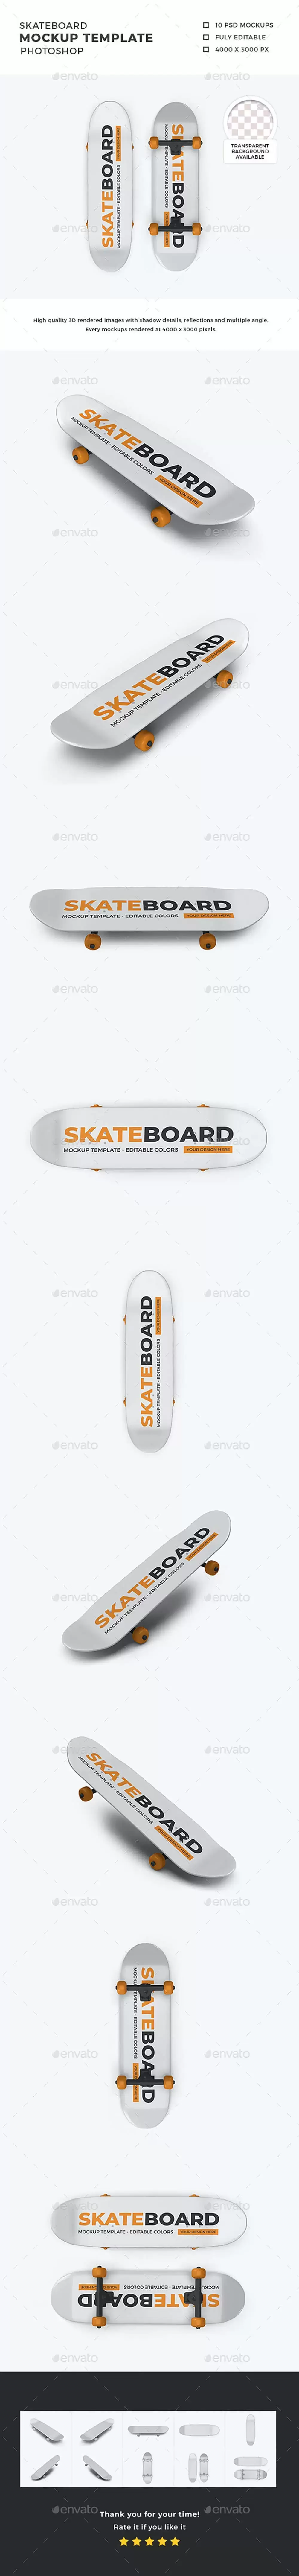 滑板品牌设计展示样机模板集 (psd)免费下载插图